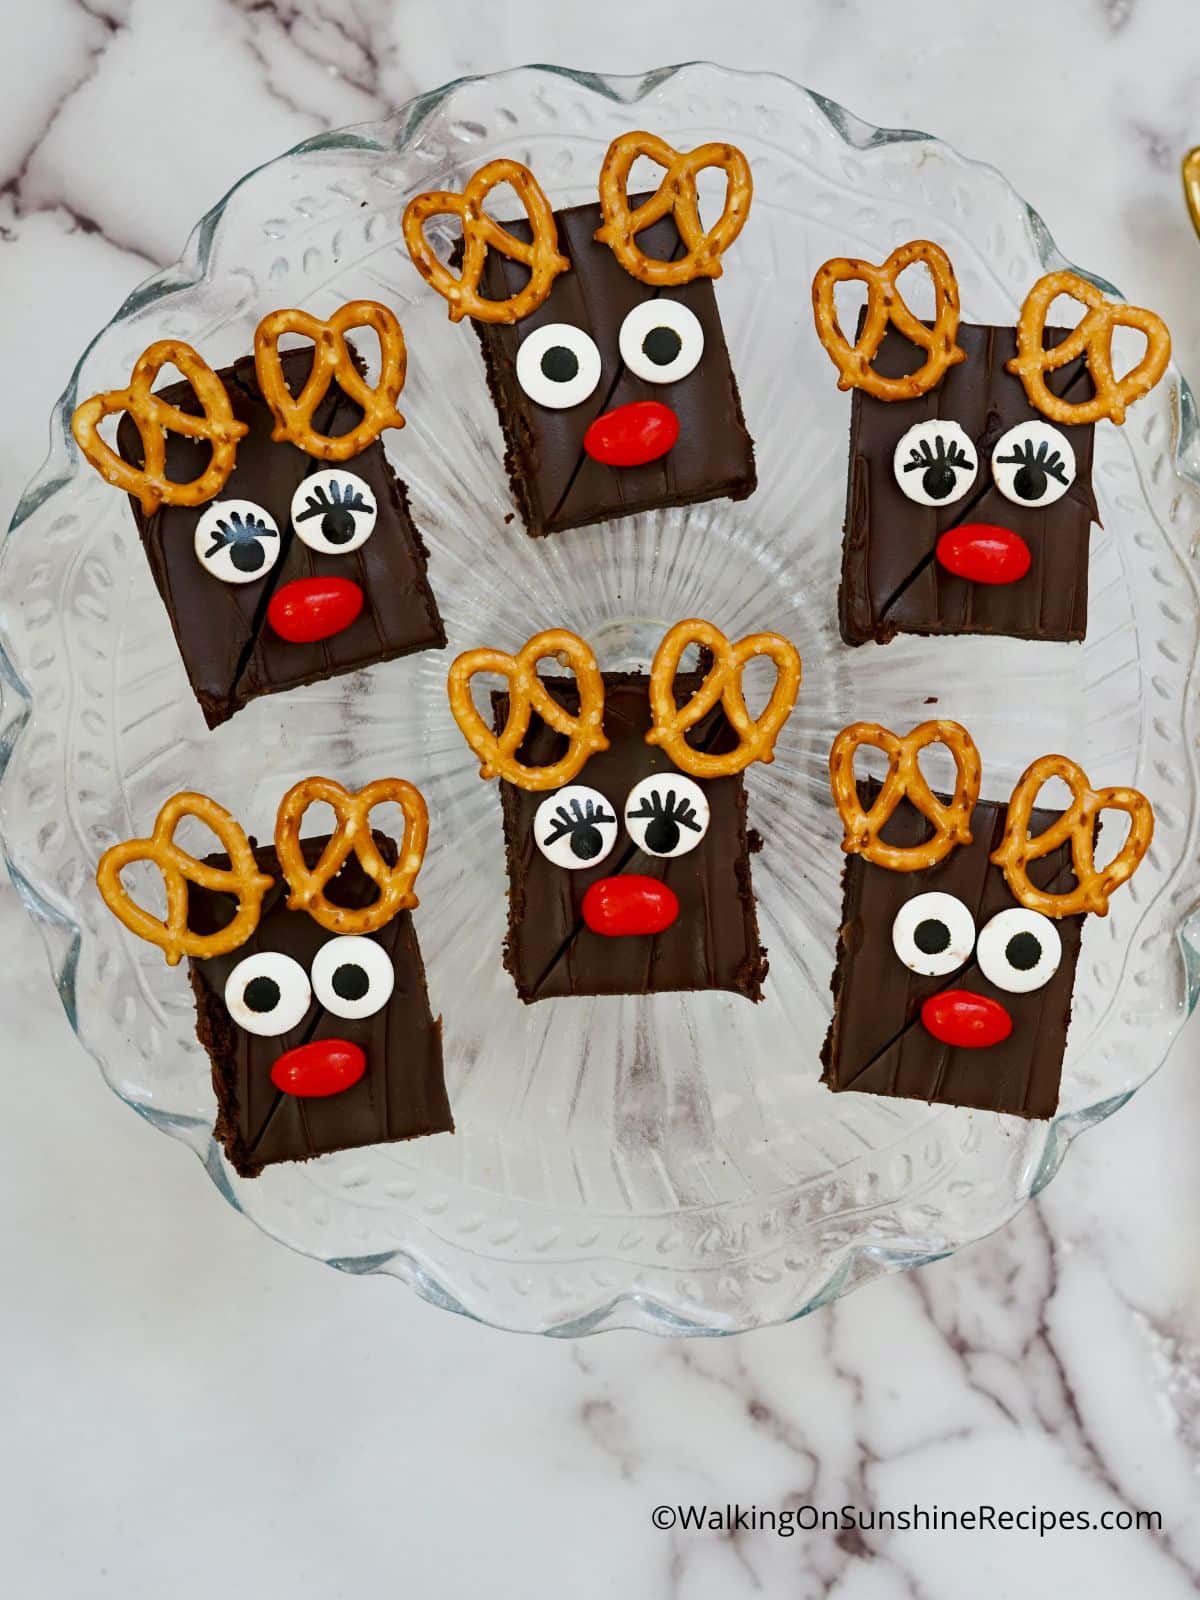 decorated brownies to look like reindeer.